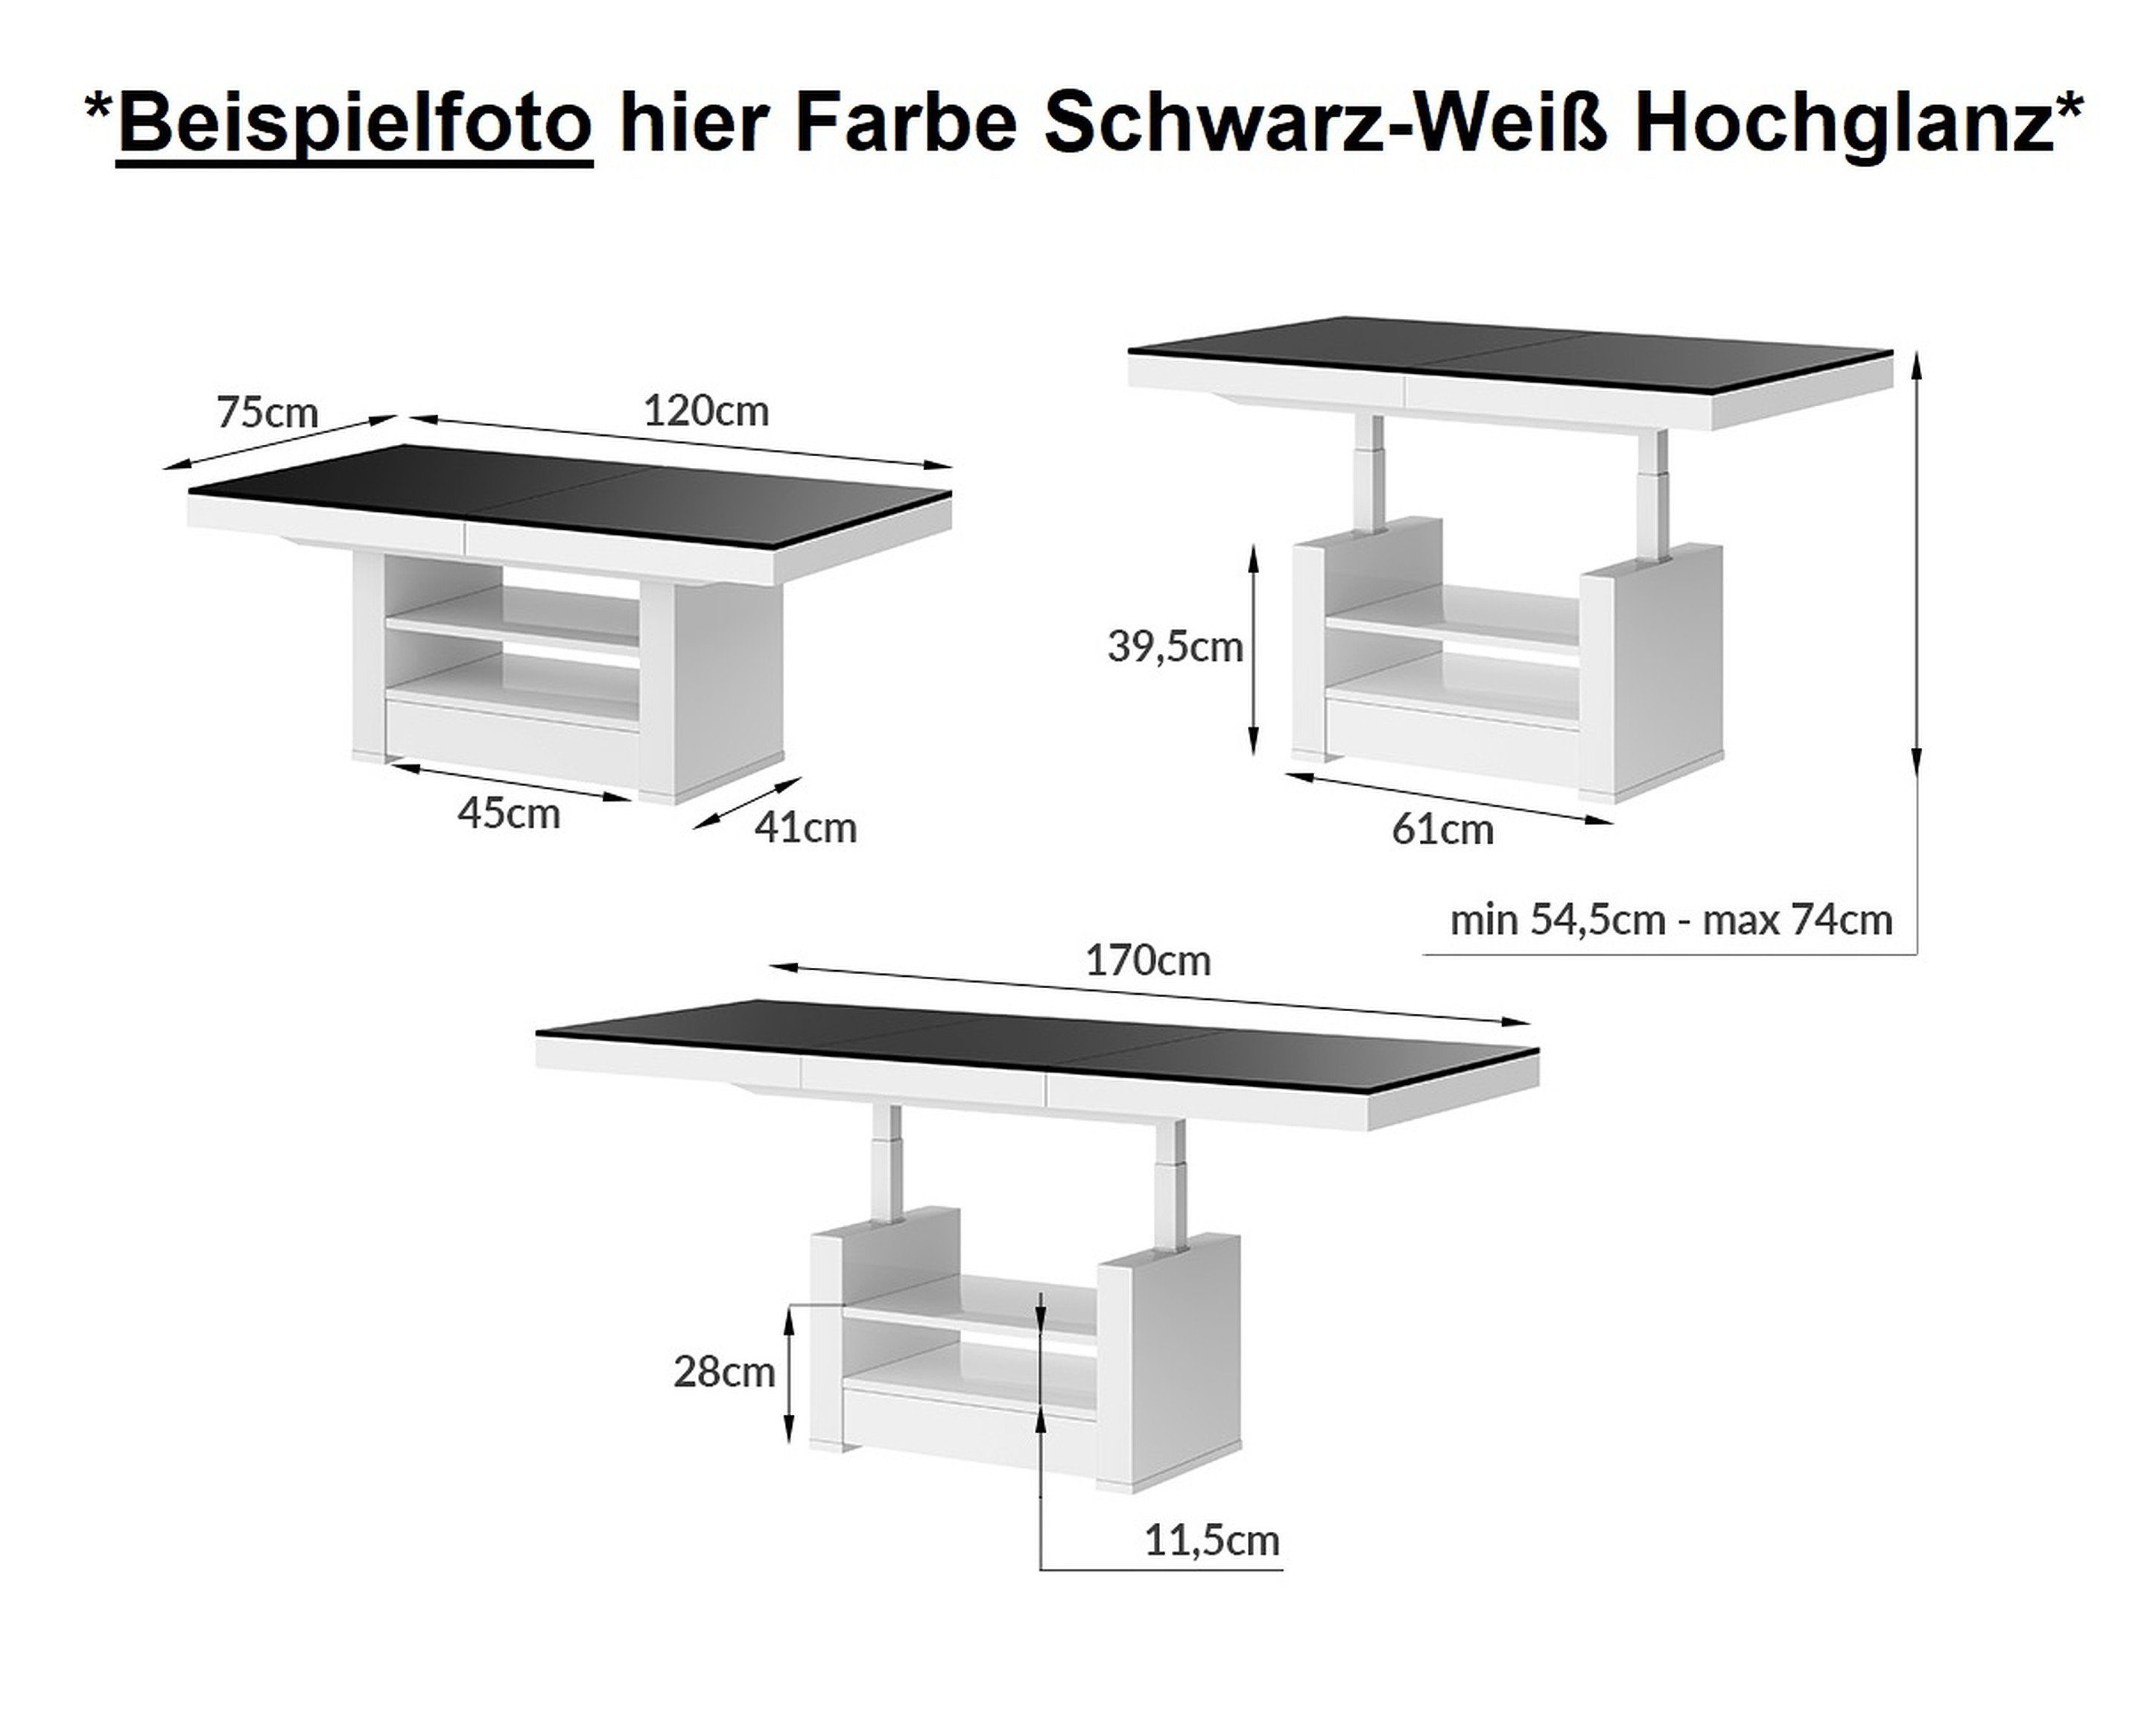 Hochglanz Hochglanz Schublade ausziehbar designimpex HLM-111 / Schwarz Weiß höhenverstellbar Couchtisch Hochglanz Weiß-Schwarz